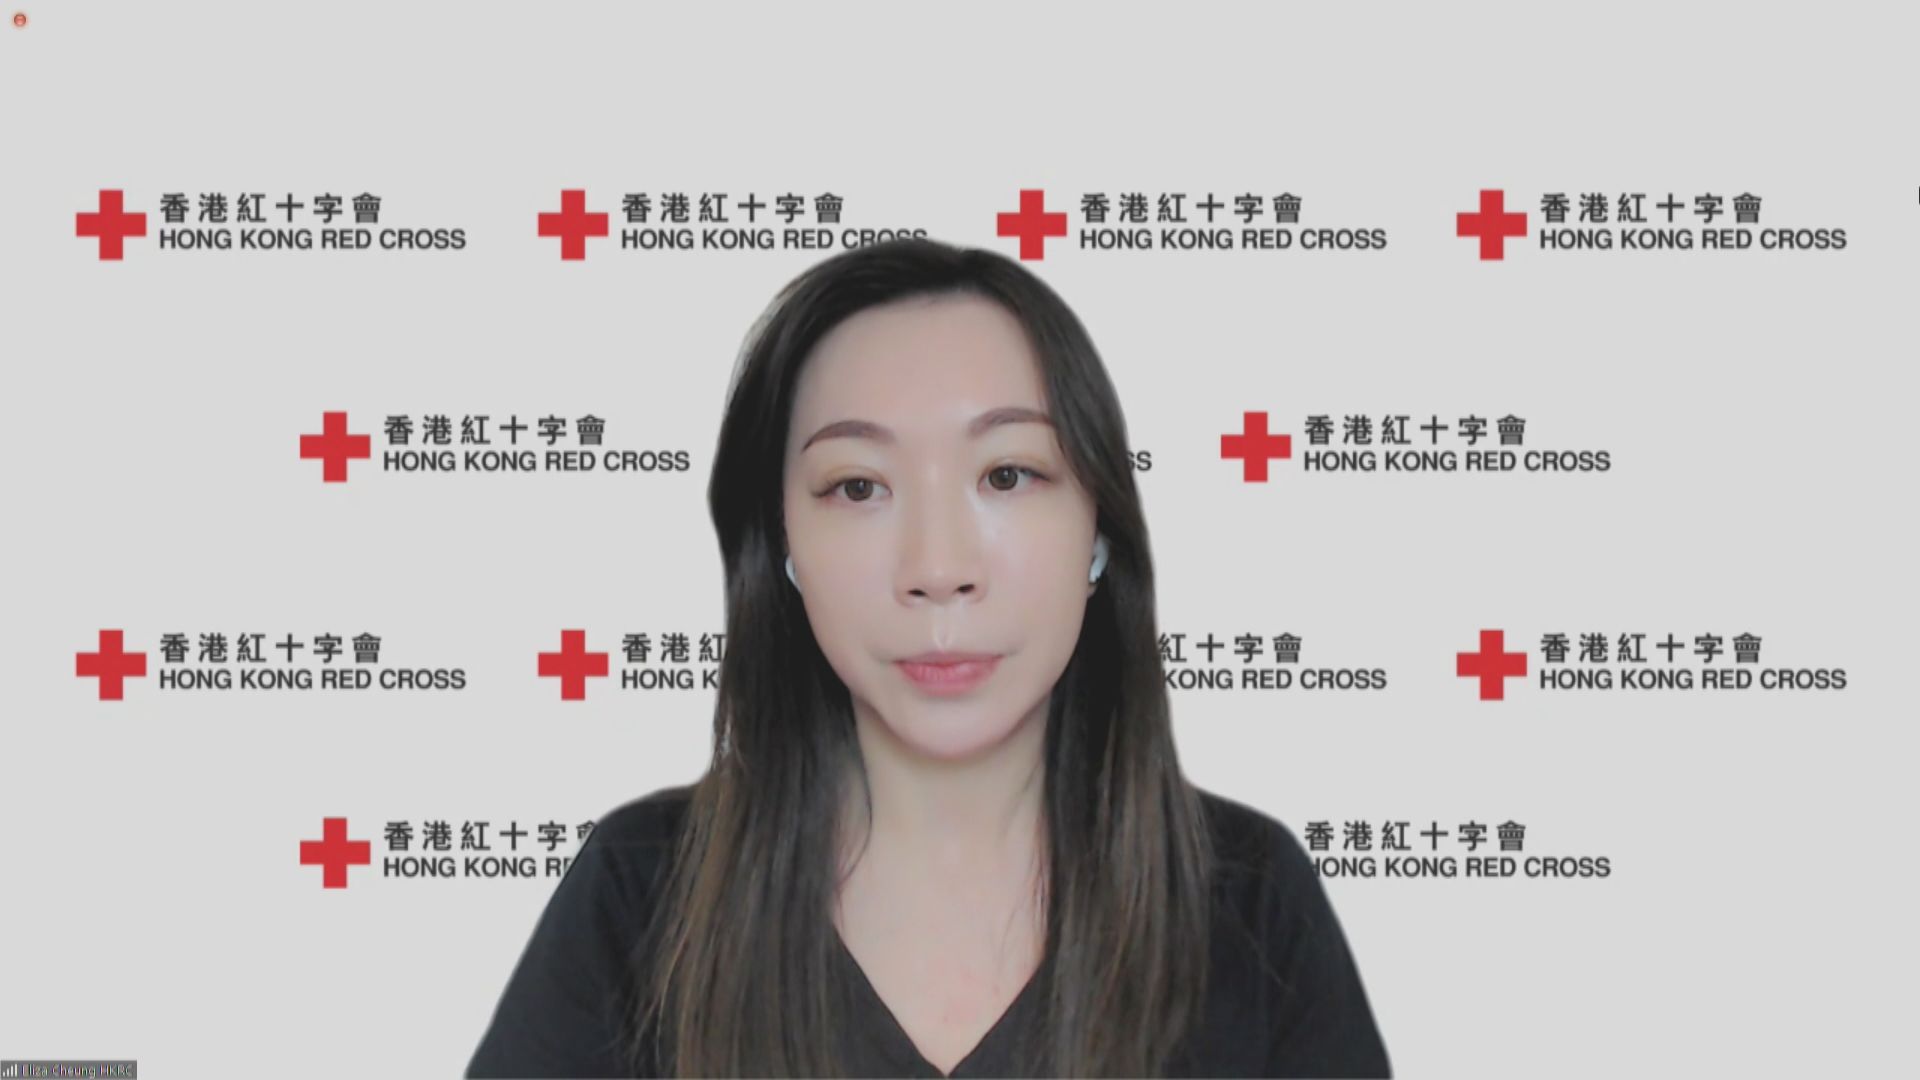 紅十字會熱線收過百宗求助 兩成受精神健康問題困擾